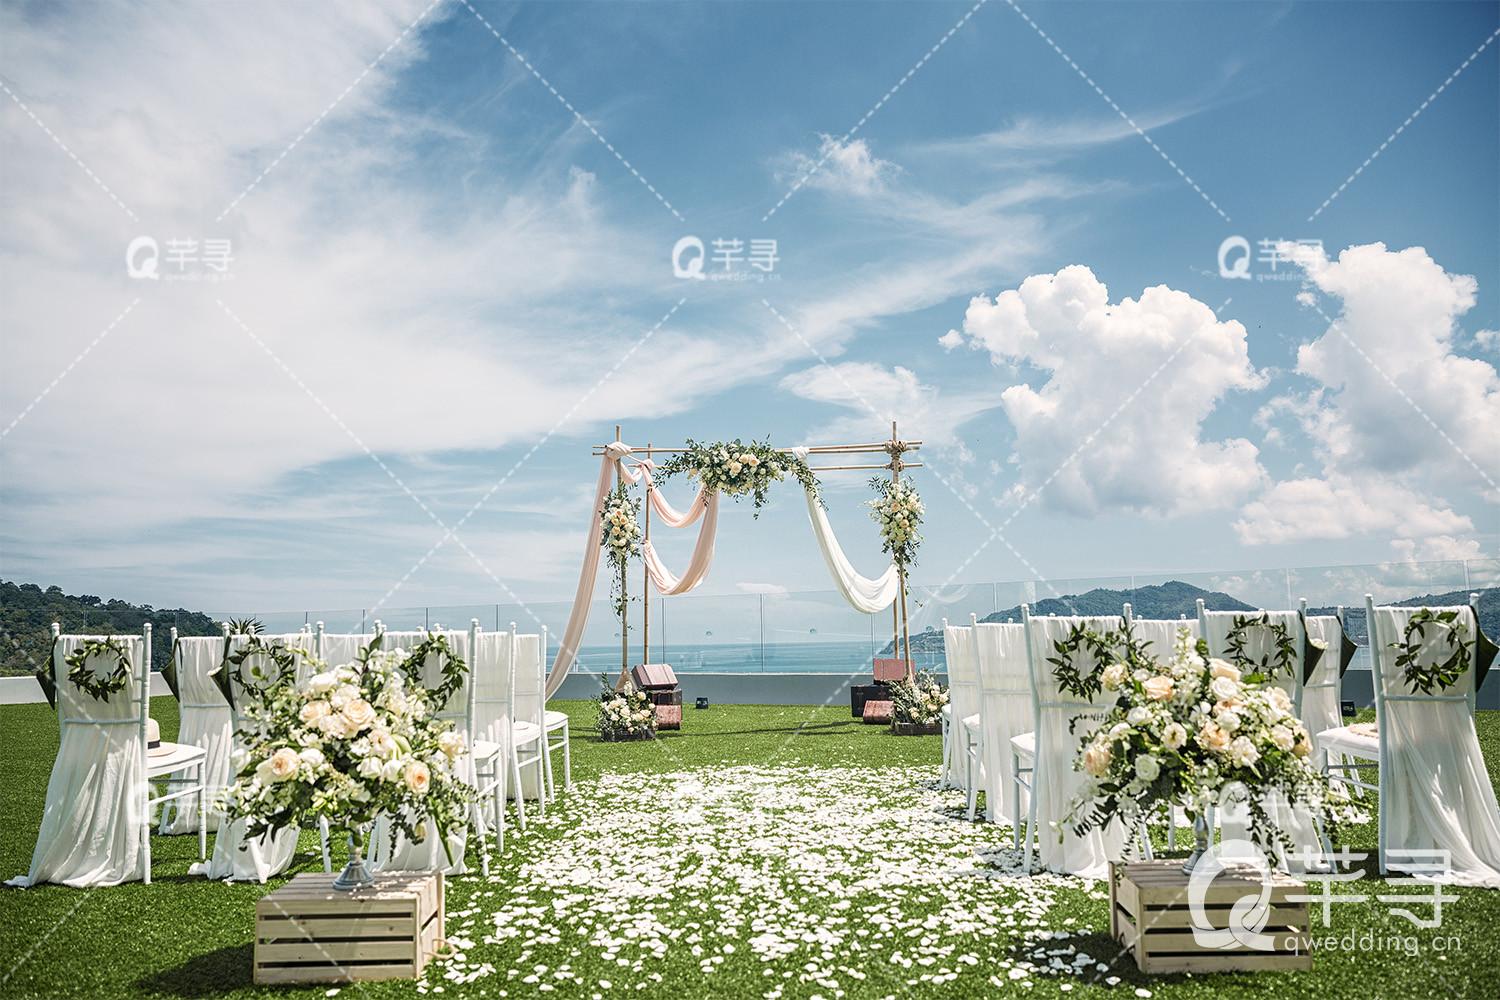 海边的热带风 - 目的地婚礼 - 婚礼图片 - 婚礼风尚